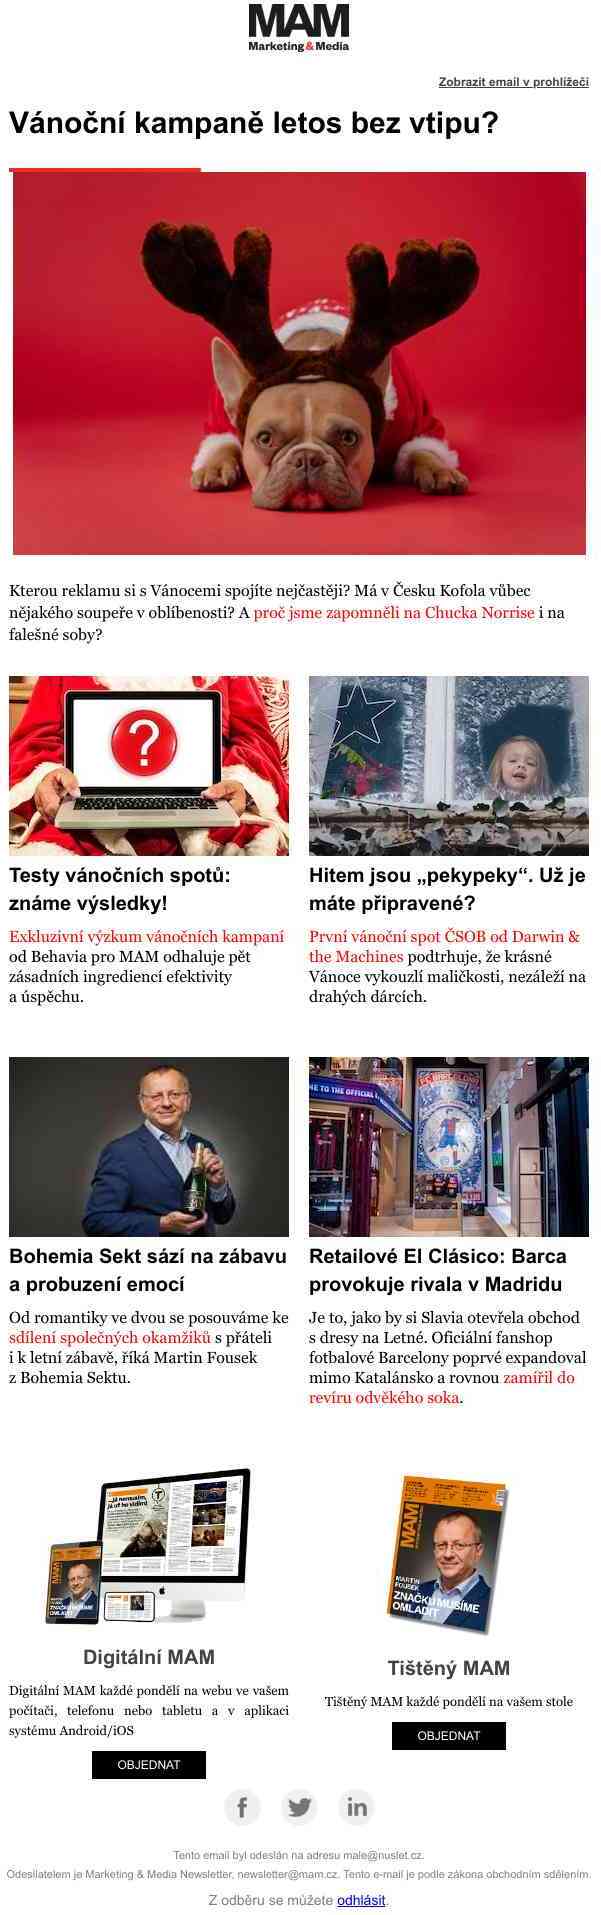 Výsledky testů vánočních spotů – První vánoční spot ČSOB – Bohemia Sekt posouvá brand k zábavě  – Fotbalové derby v retailu